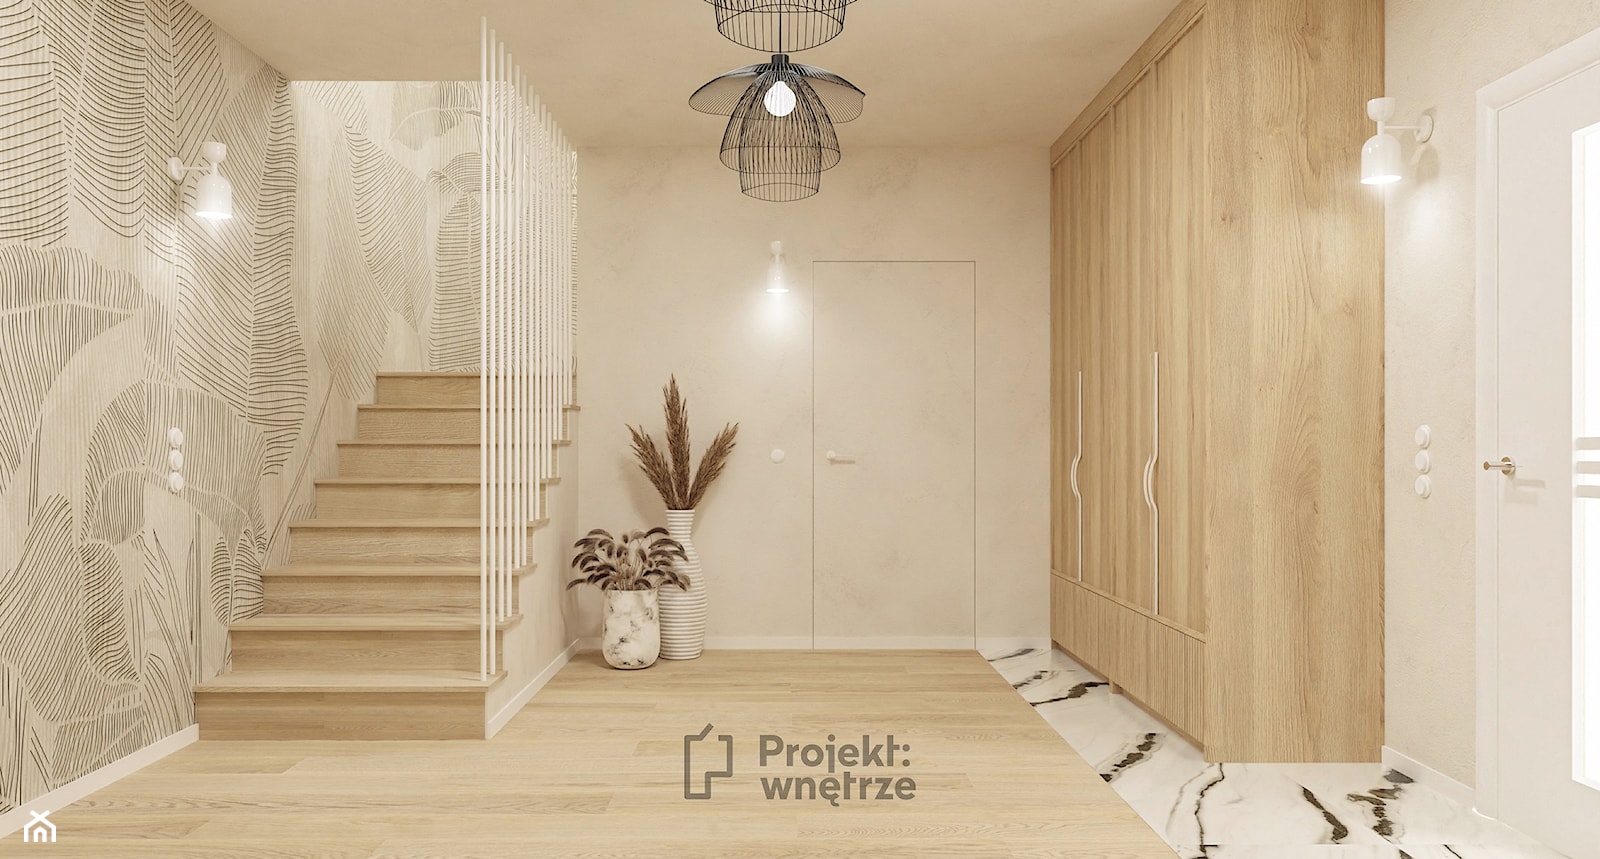 Duży beżowy hol / przedpokój biały z szafą japandi styl minimalistyczny z lustrem z siedziskiem ze schodami z zabudową meblową jasne drewno struktura dekoracyjna drzwi ukryte - PROJEKT: WNĘTRZE - zdjęcie od PROJEKT: WNĘTRZE - Homebook